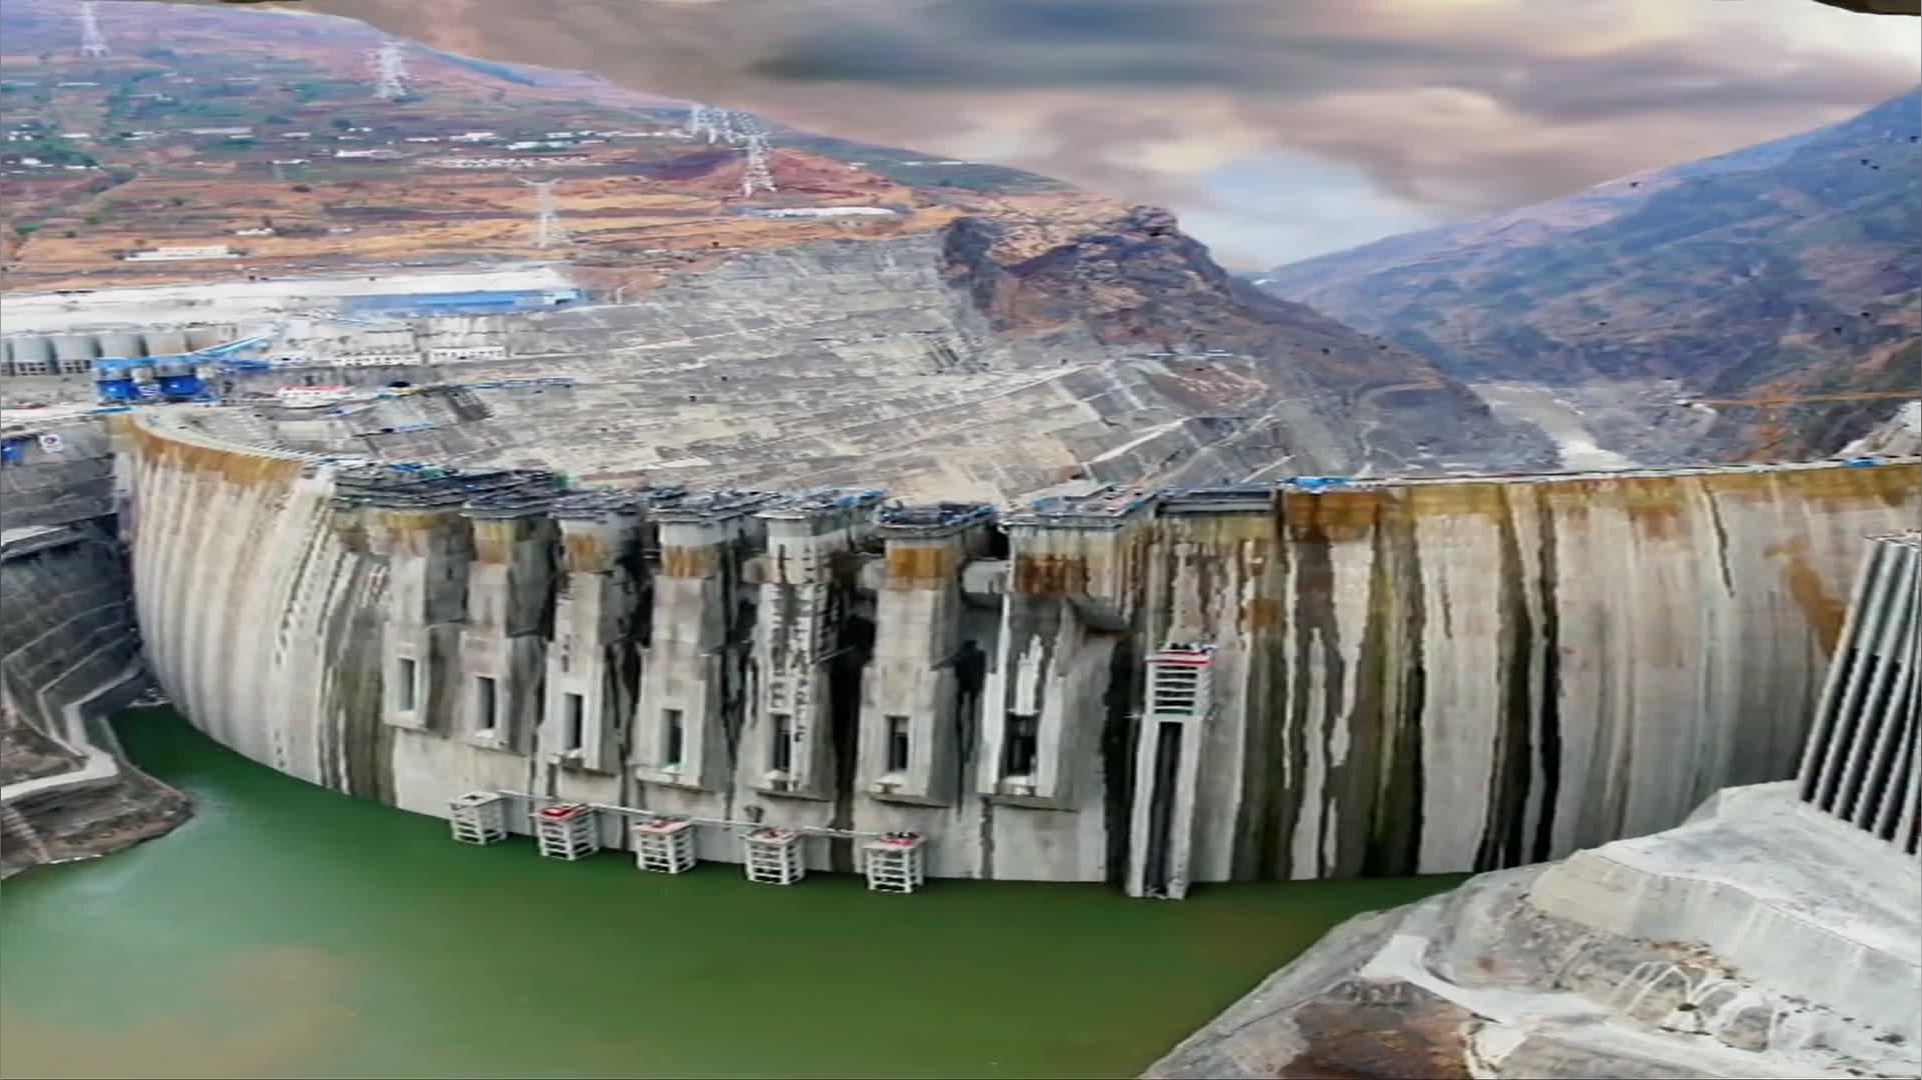 红延河工程全程图片